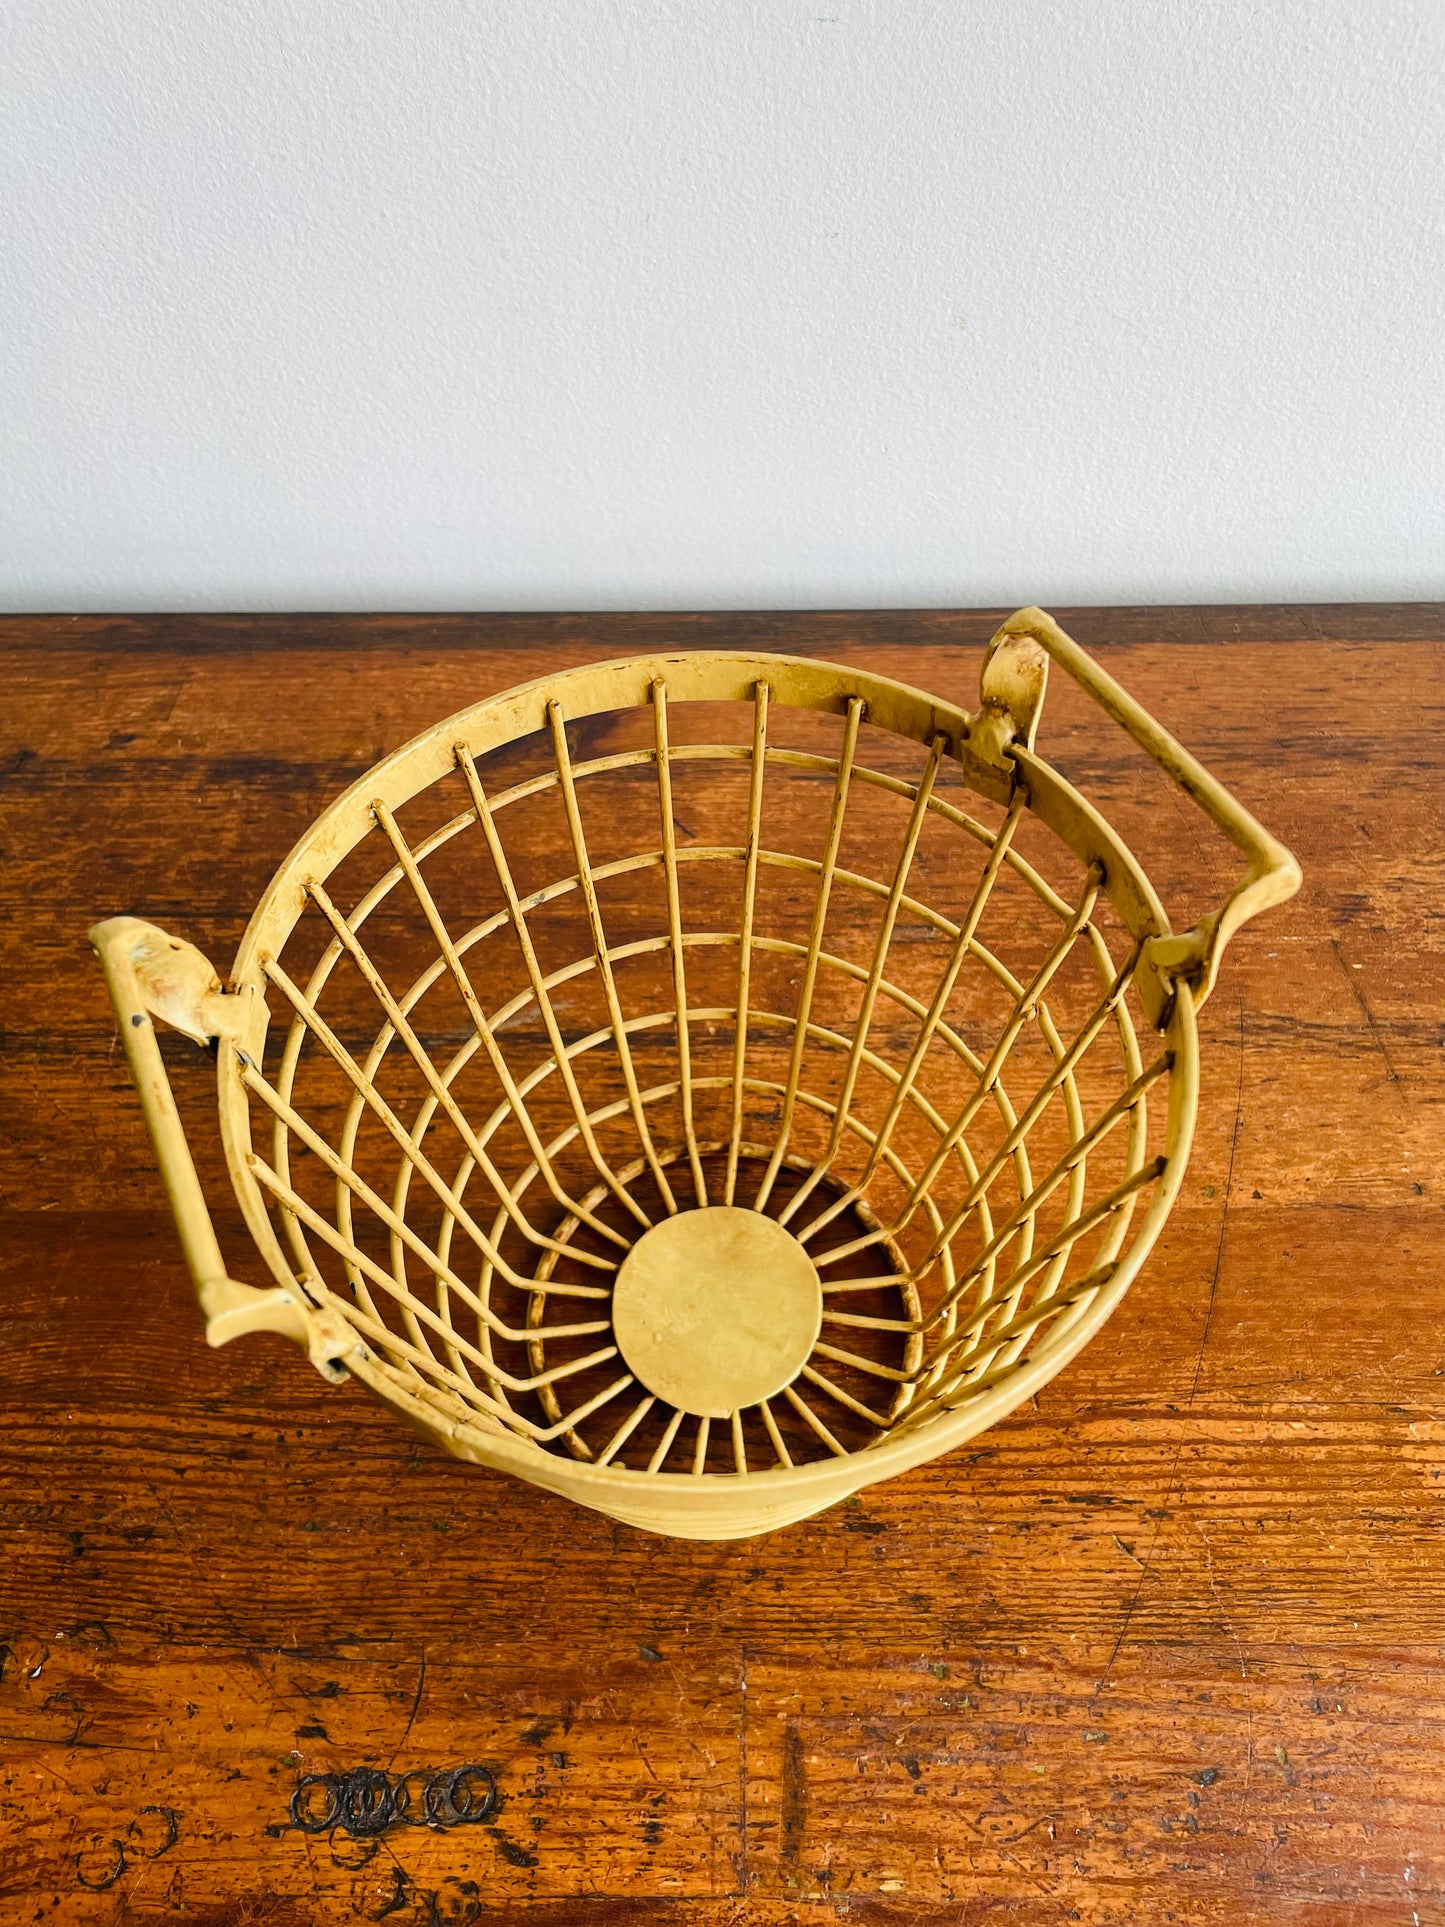 Yellow Metal Driving Range Golf Ball Basket - Great for Kitchen Utensil Storage!